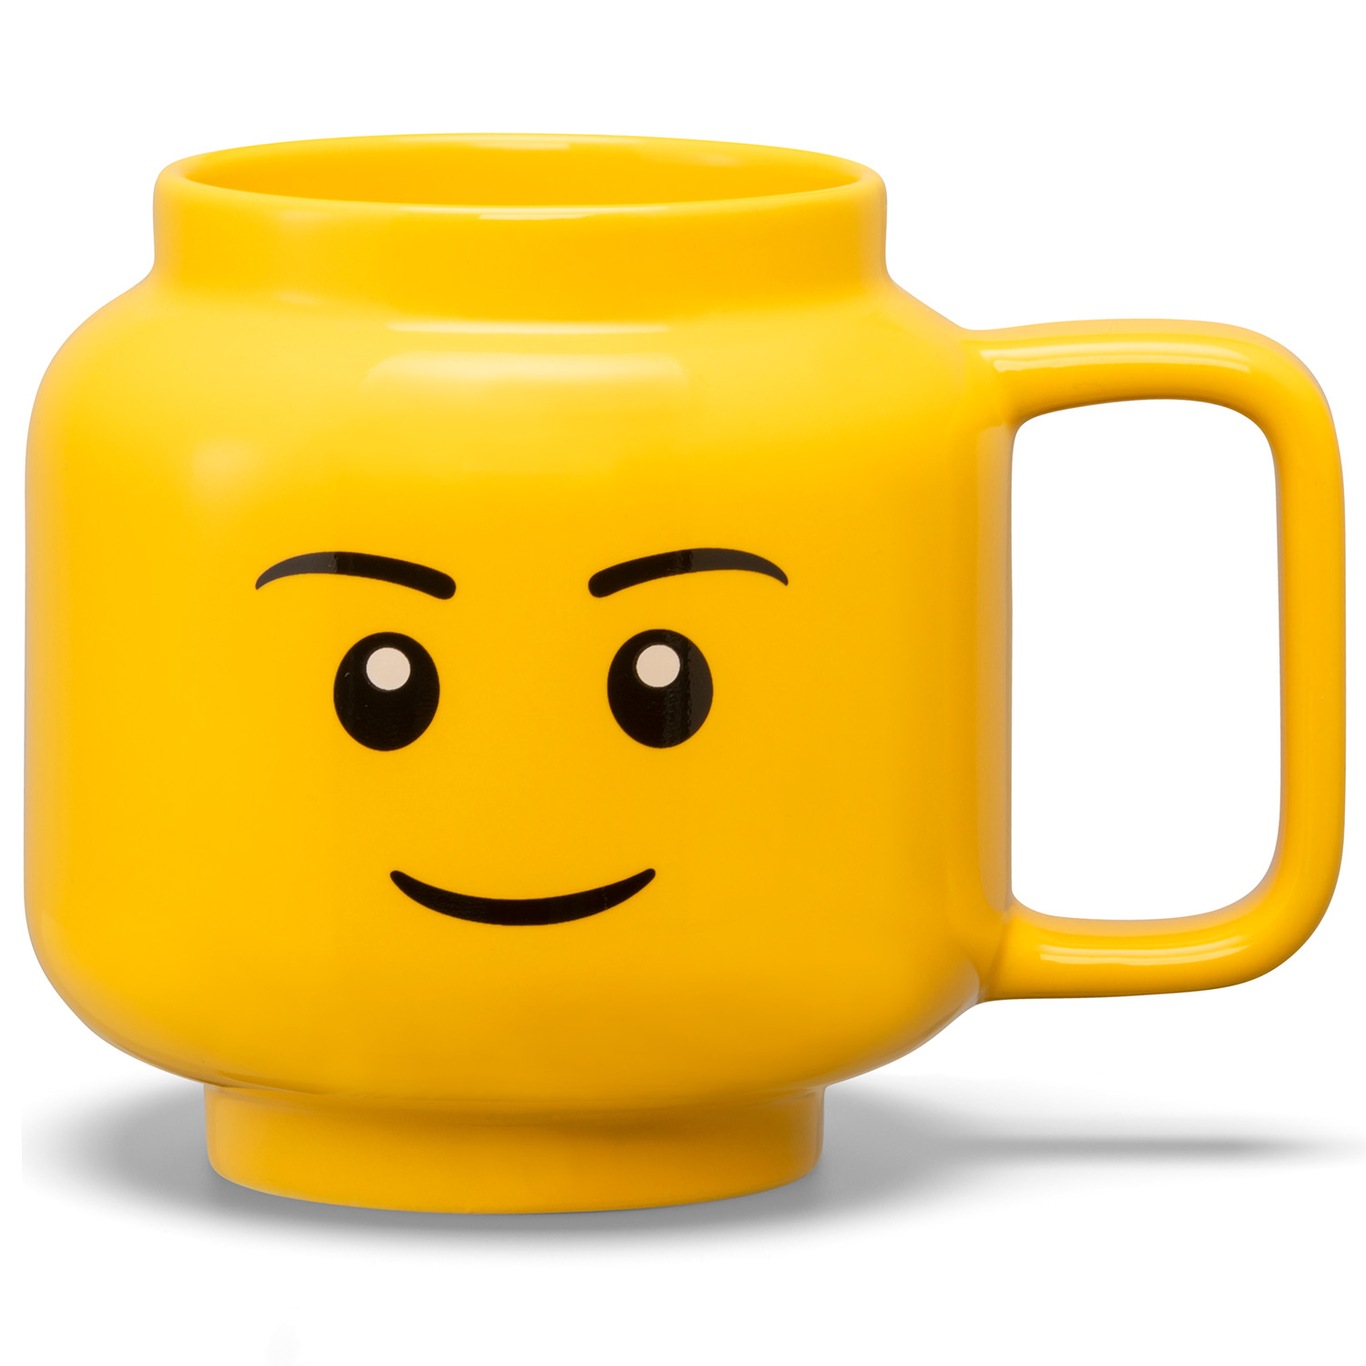 LEGO Ceramic Mug Small Boy Krus Gul, L